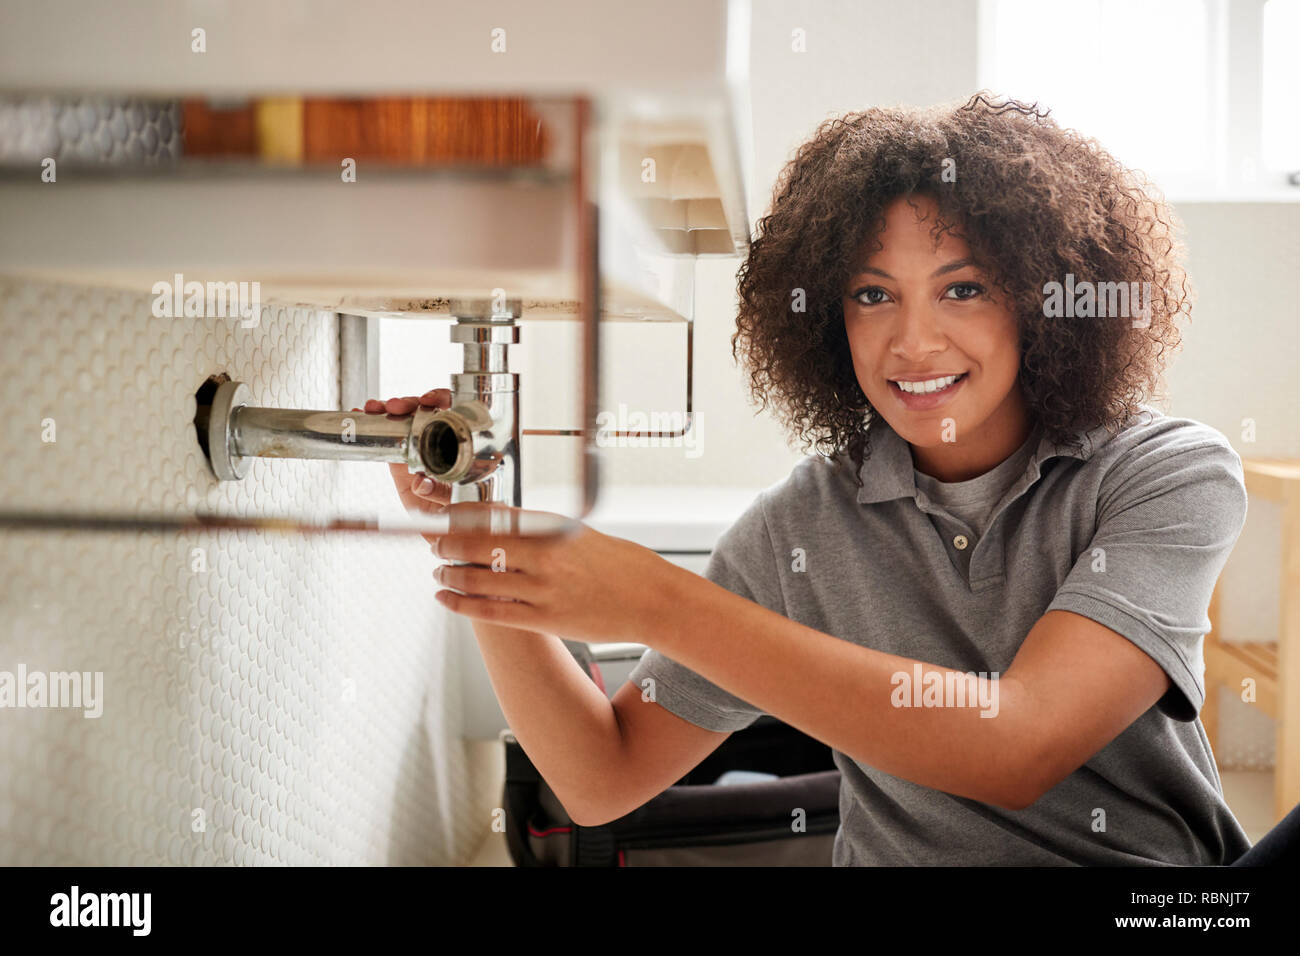 Fontanero hembra negro joven sentada en el suelo arreglar un lavabo del baño, mirando a la cámara Foto de stock